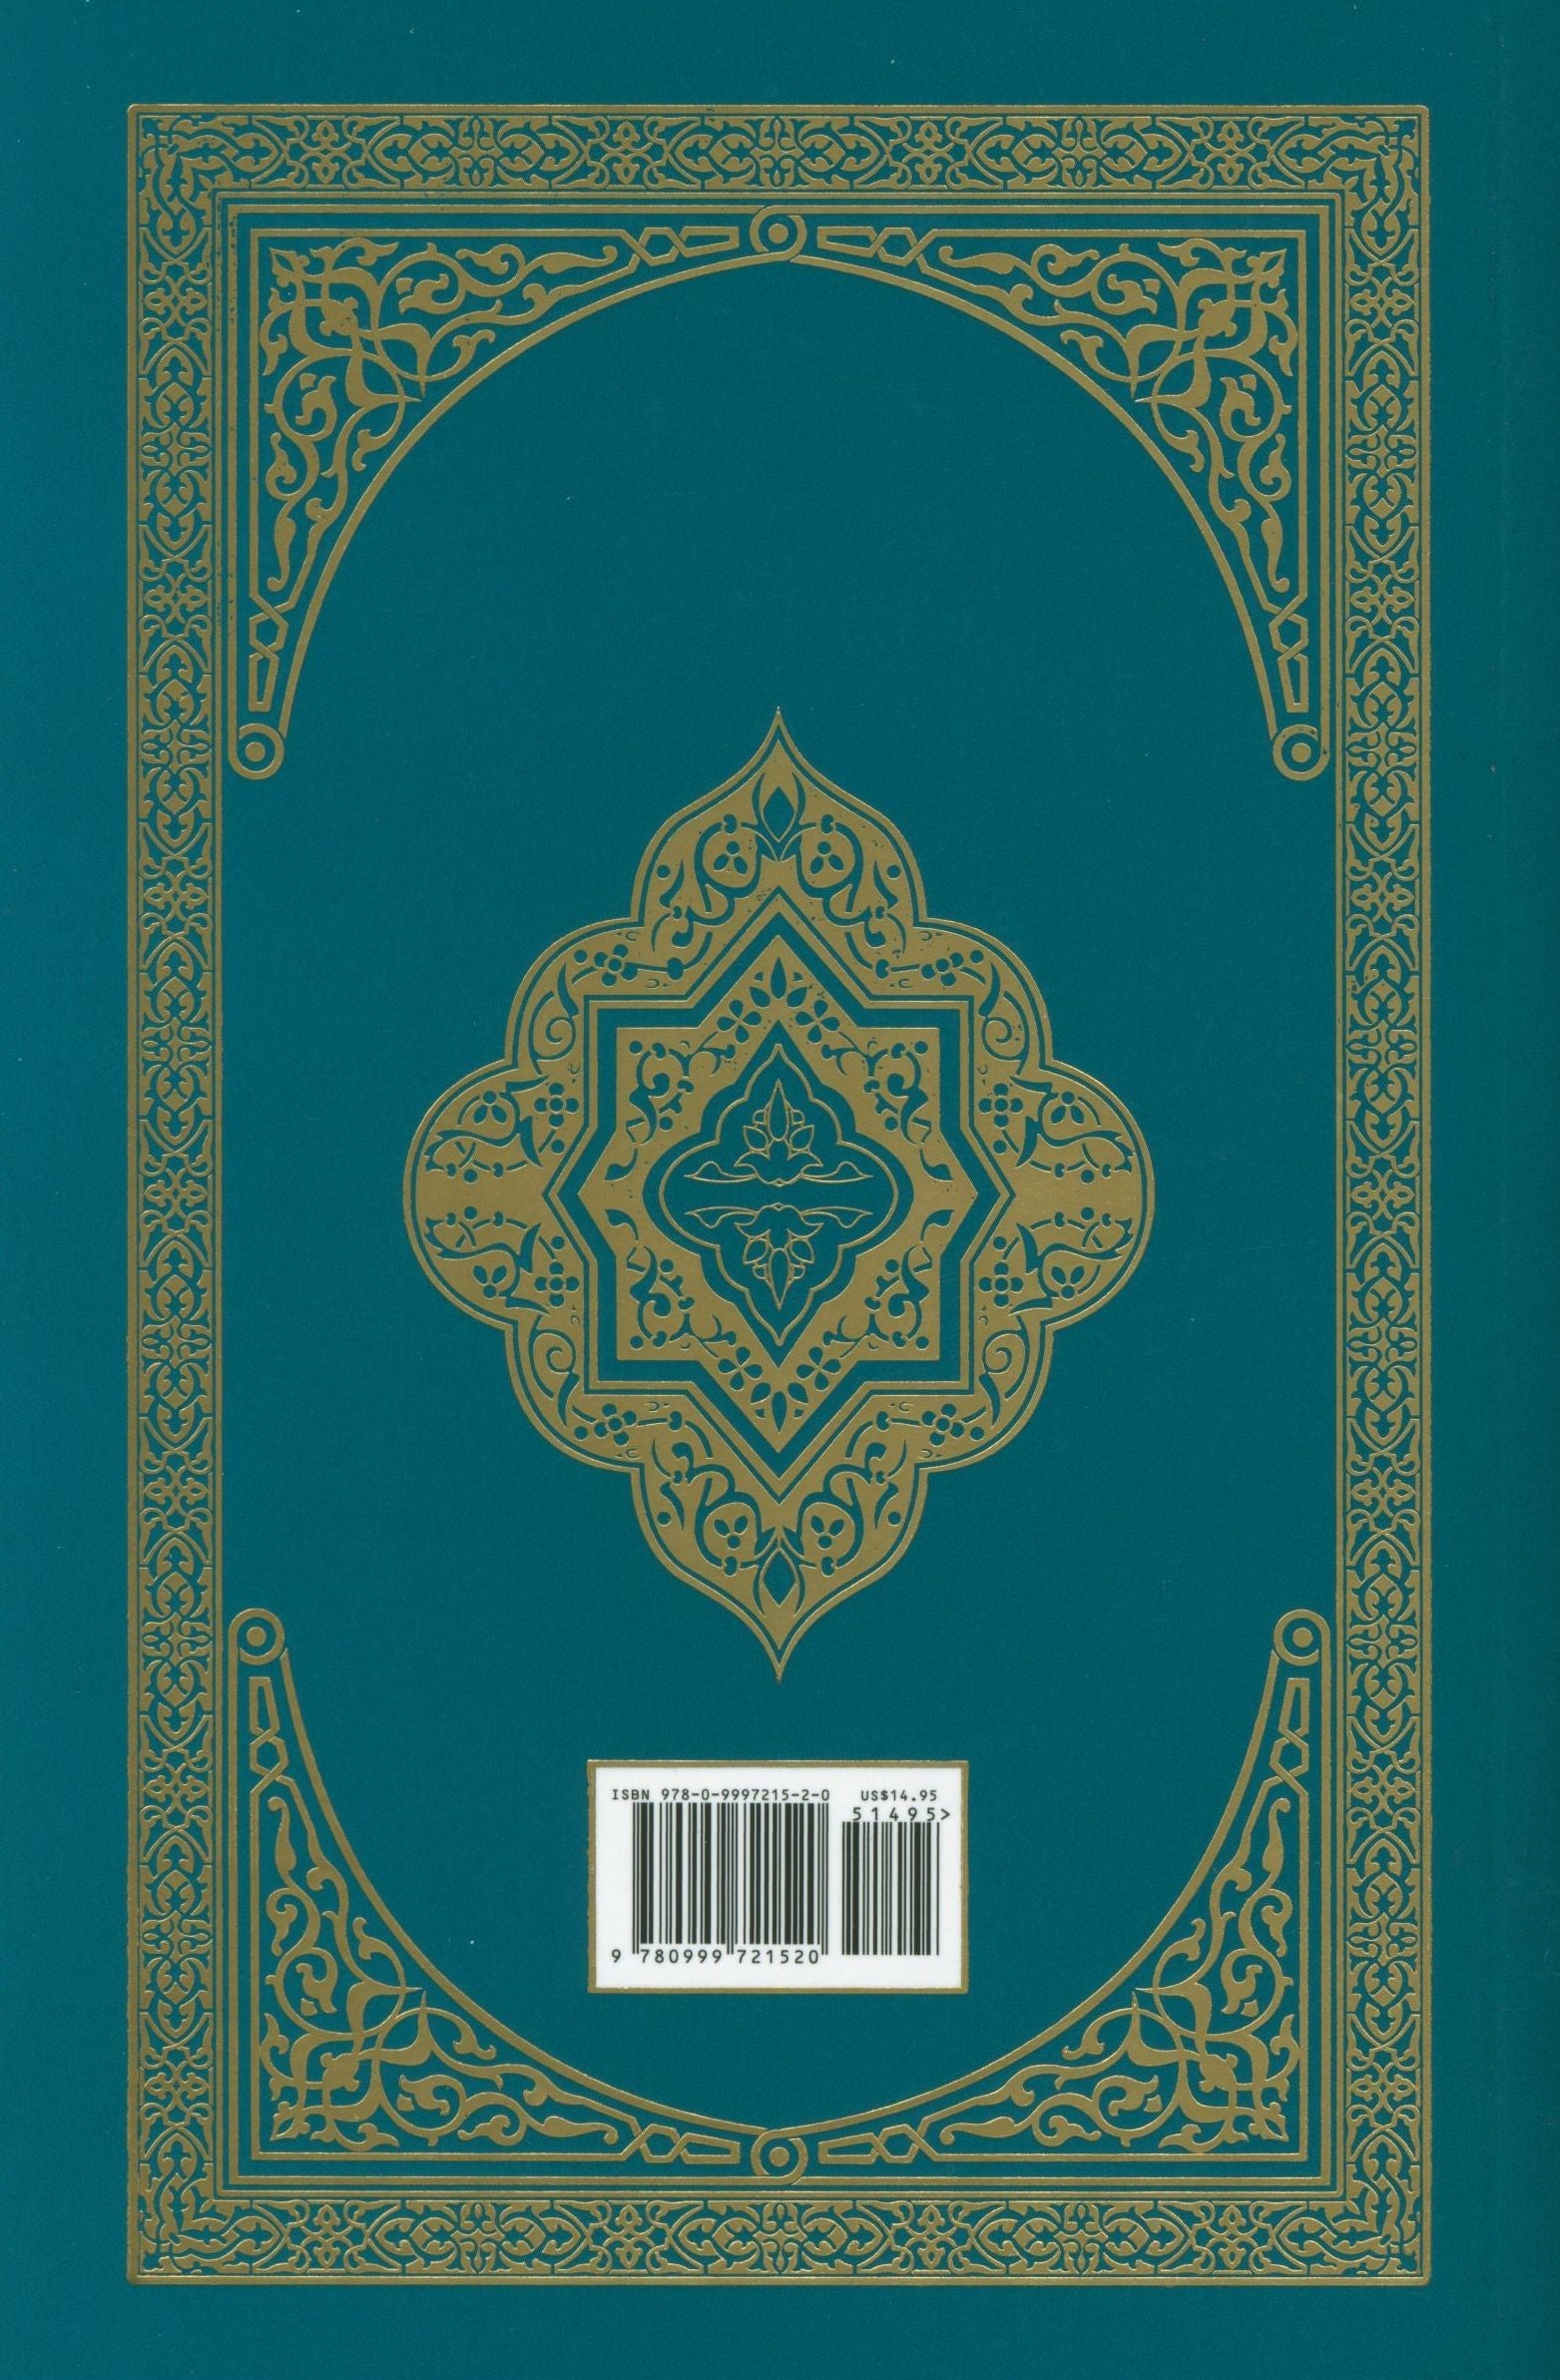 El Corán